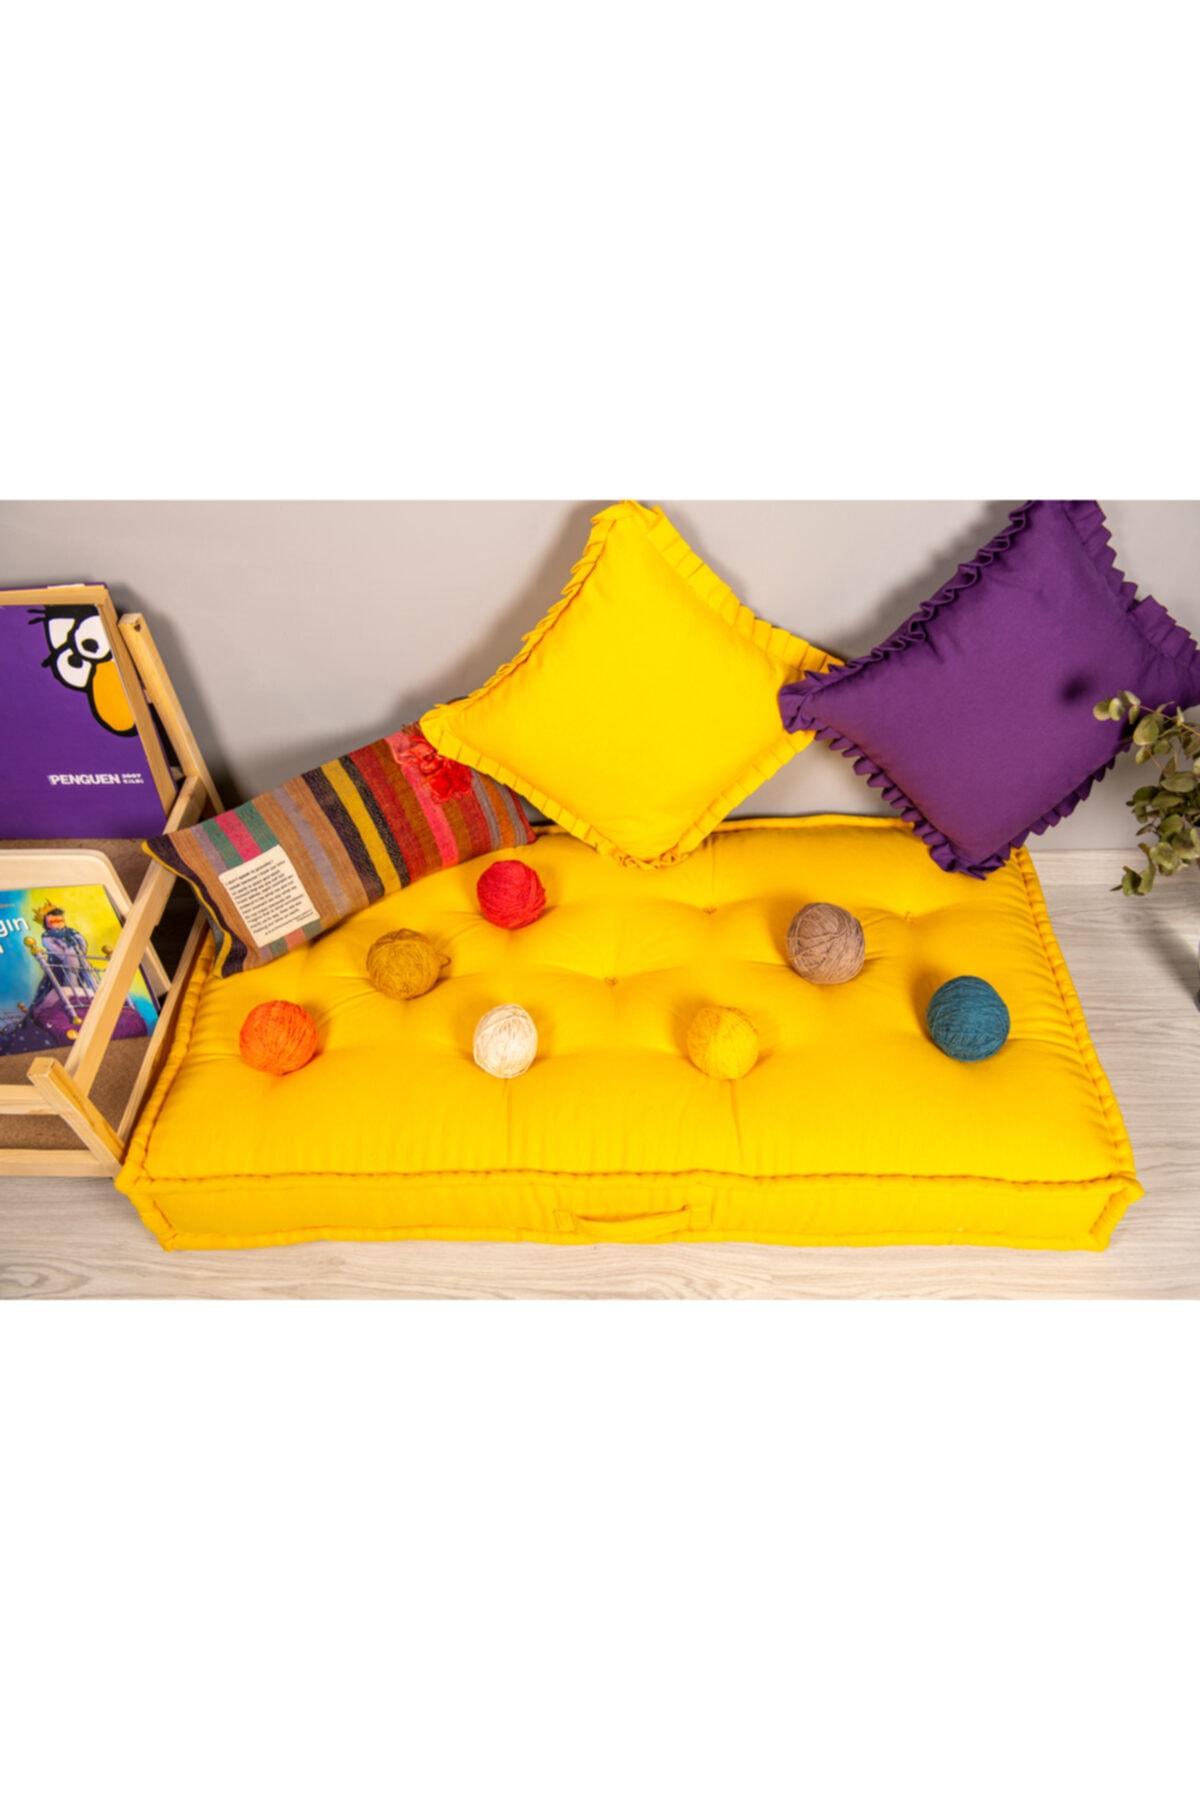 Purple Turtle Textile Organik Yer Yatağı, Anaokulu Kreş Yuva Yer Minderi 60x120 Cm